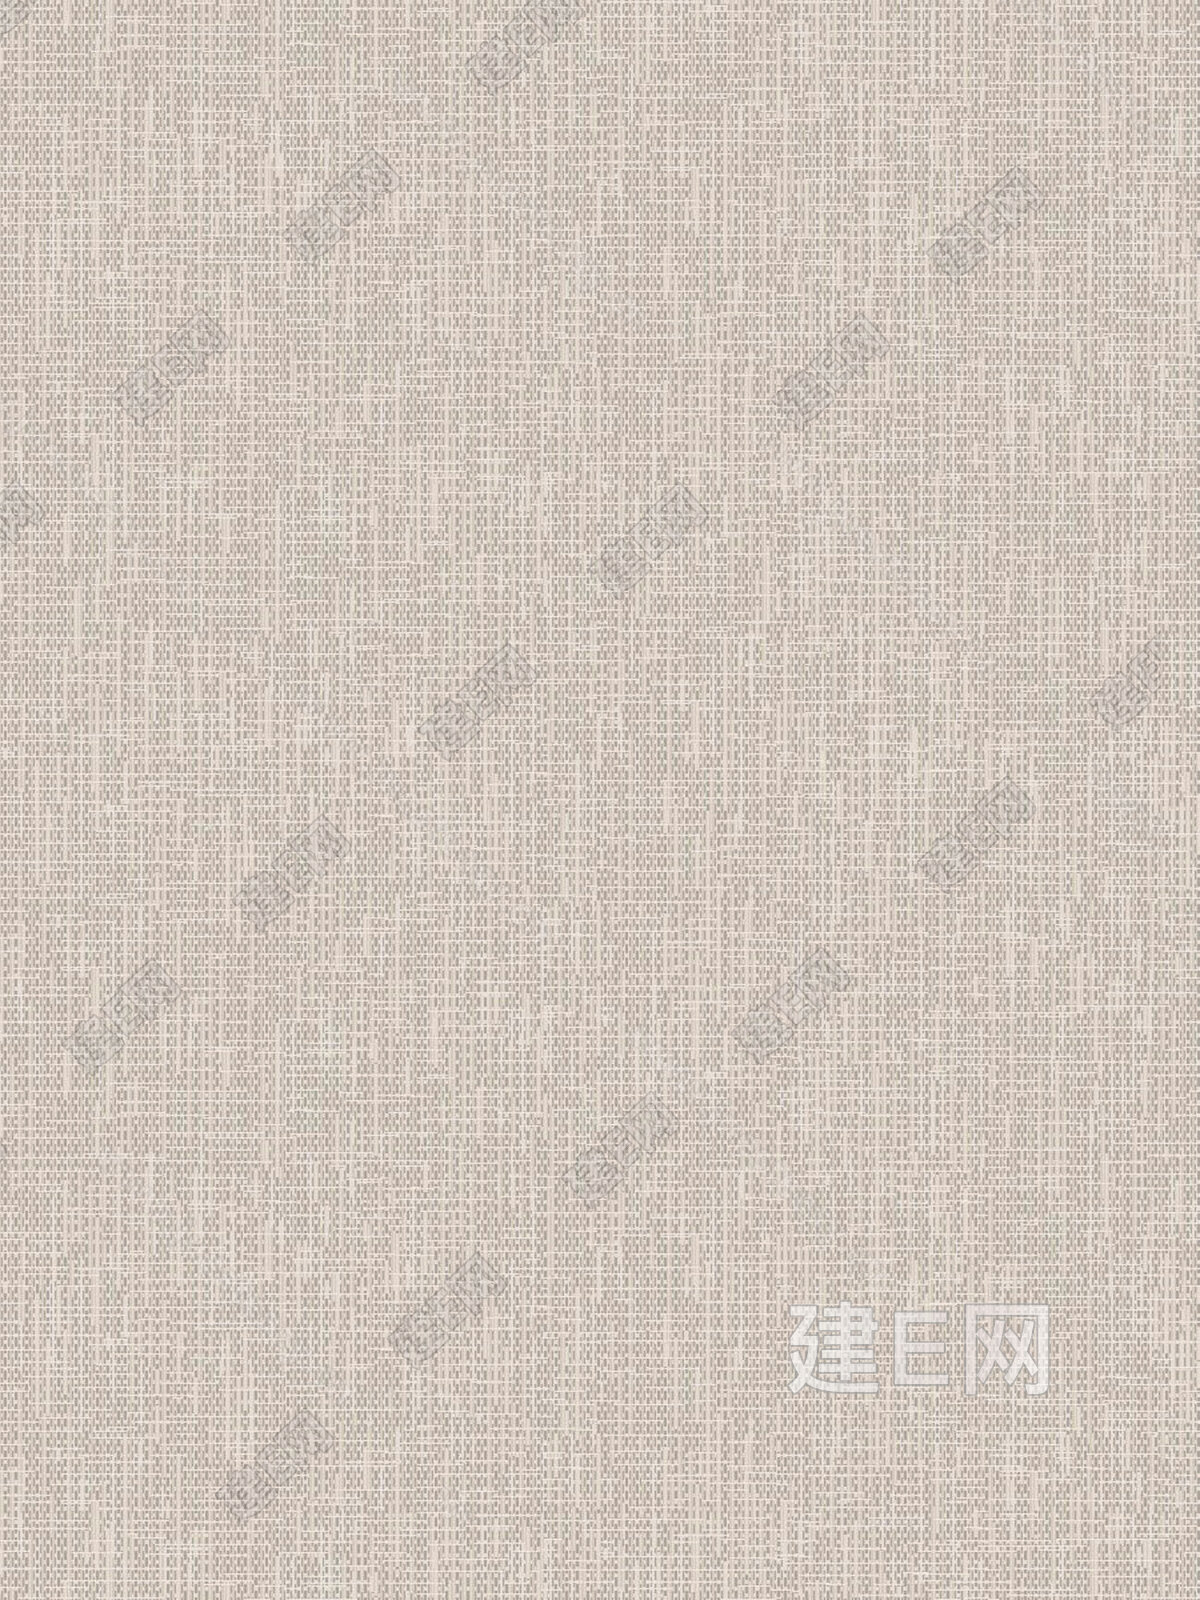 现代新中式高清纯色暗花壁纸壁布墙纸墙布贴图下载【ID:952003262】_【知末网贴图库】